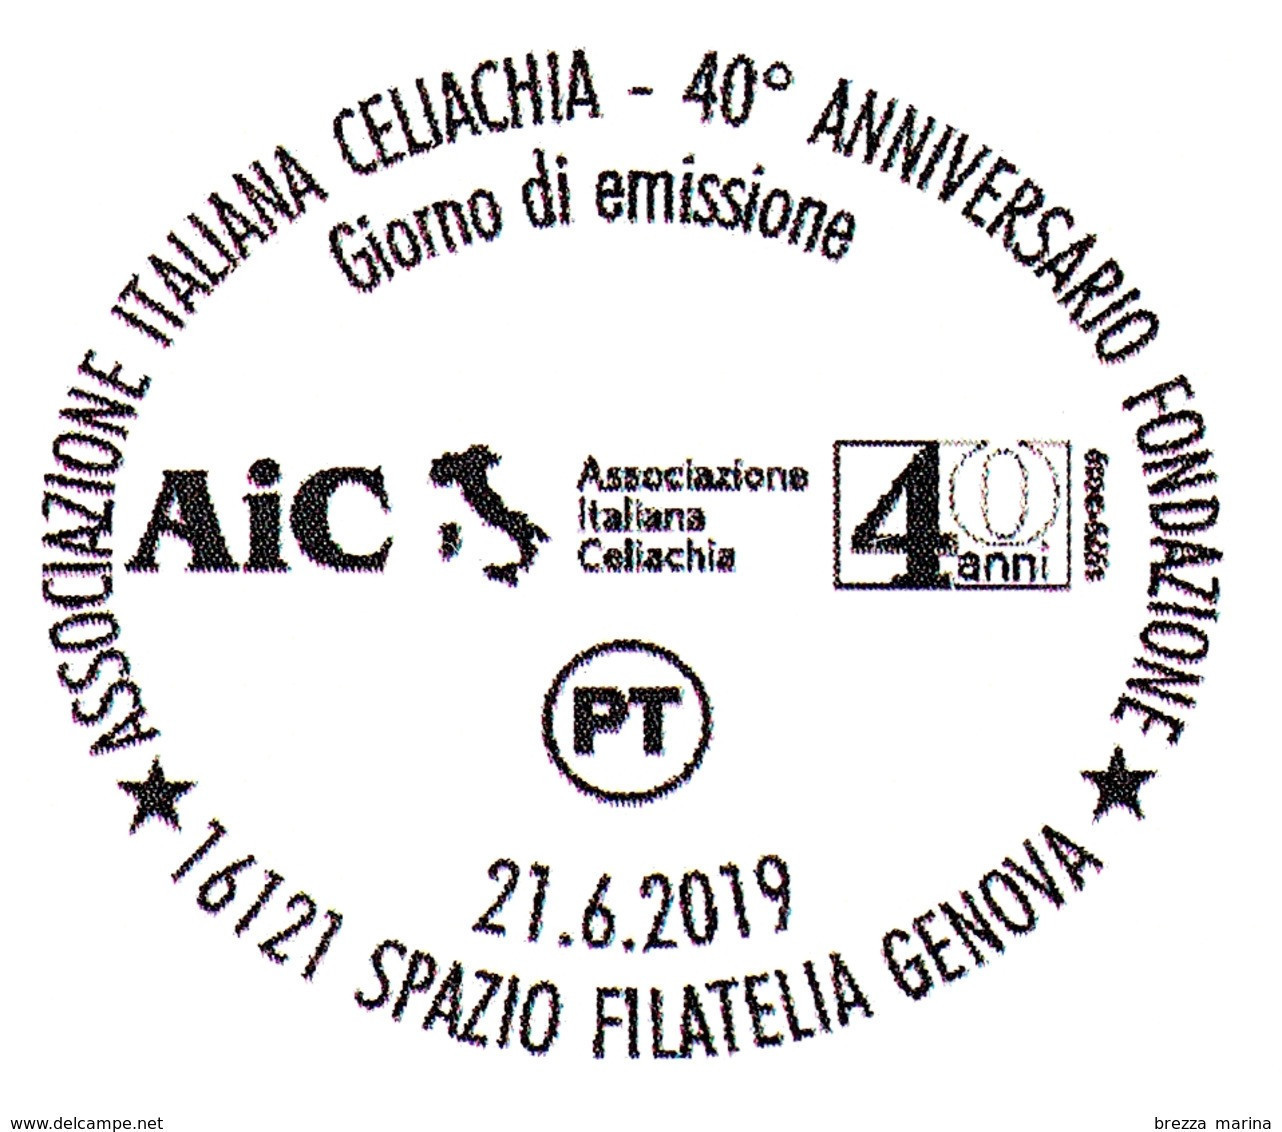 ITALIA - Usato - 2019 - 40 Anni Dell’AIC – Associazione Italiana Celiachia – Figure - B - 2011-20: Gebraucht